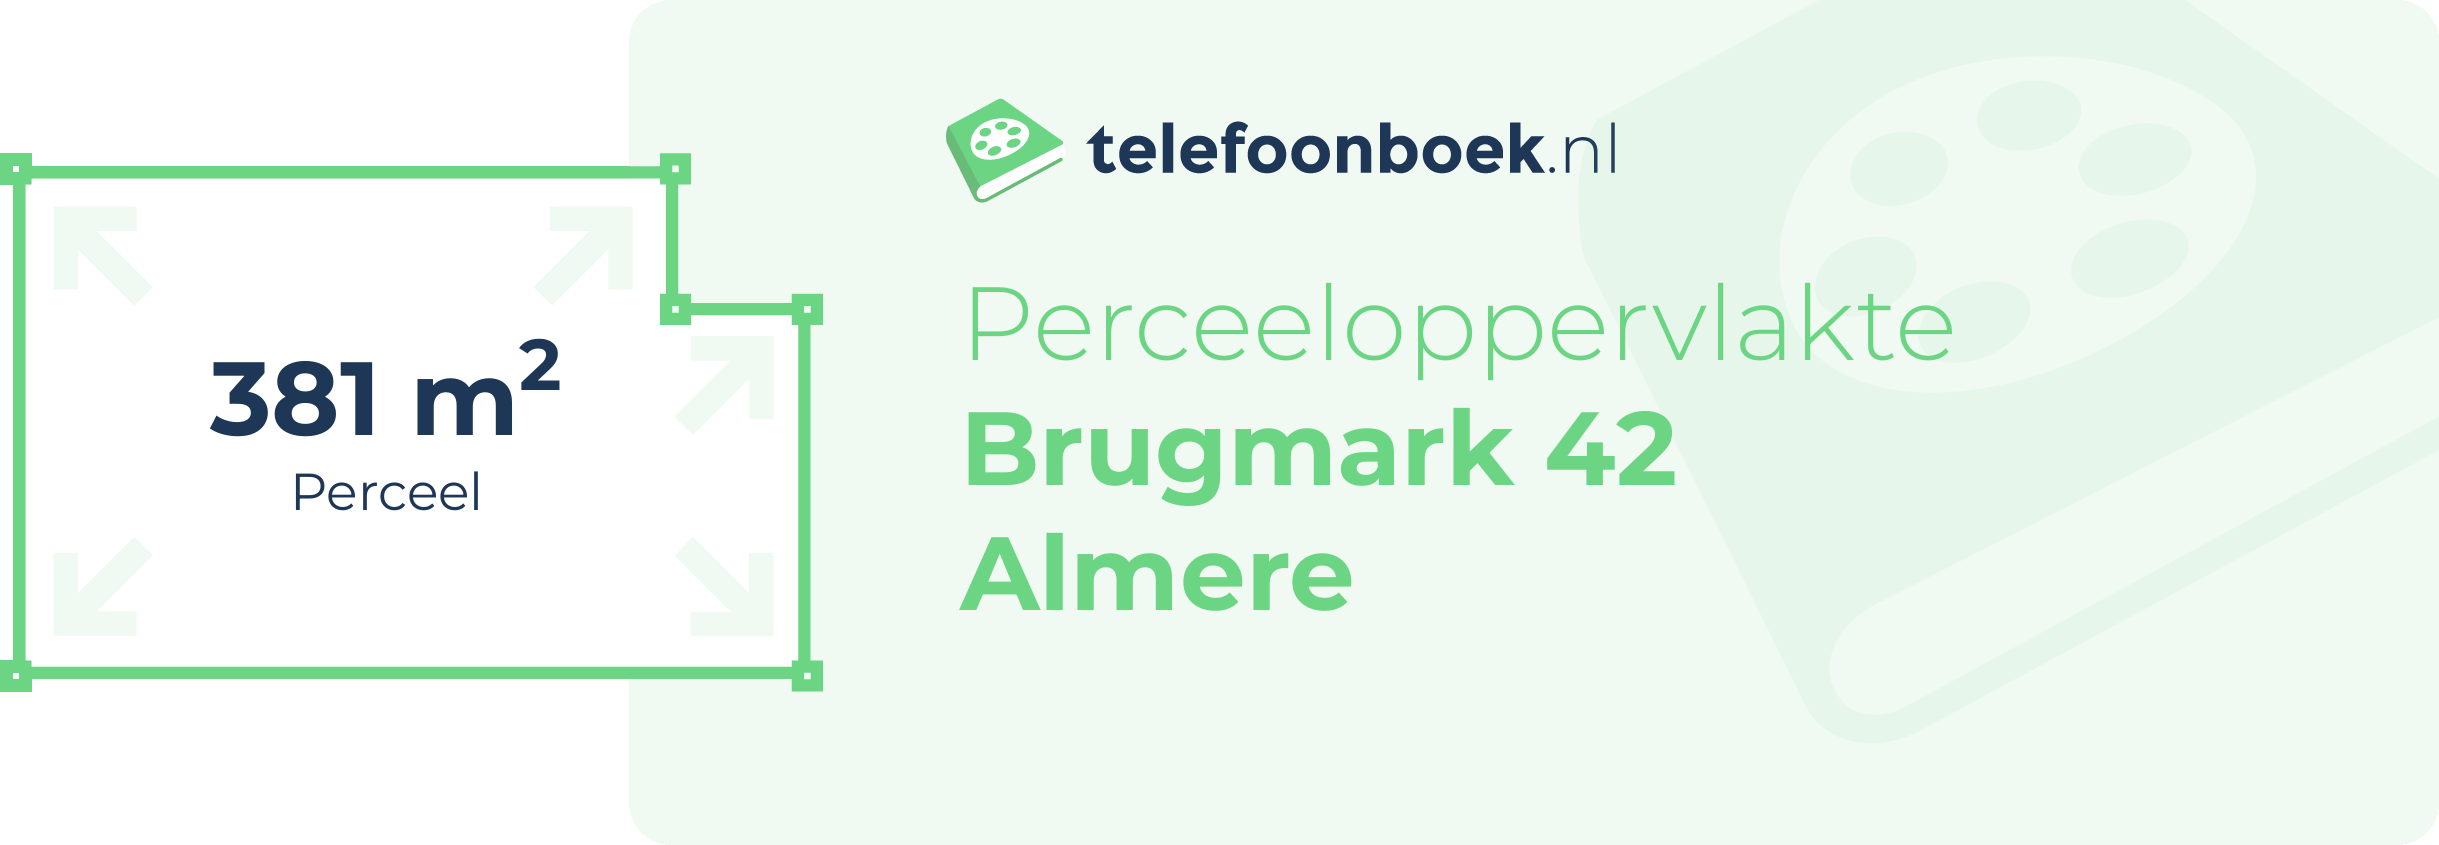 Perceeloppervlakte Brugmark 42 Almere